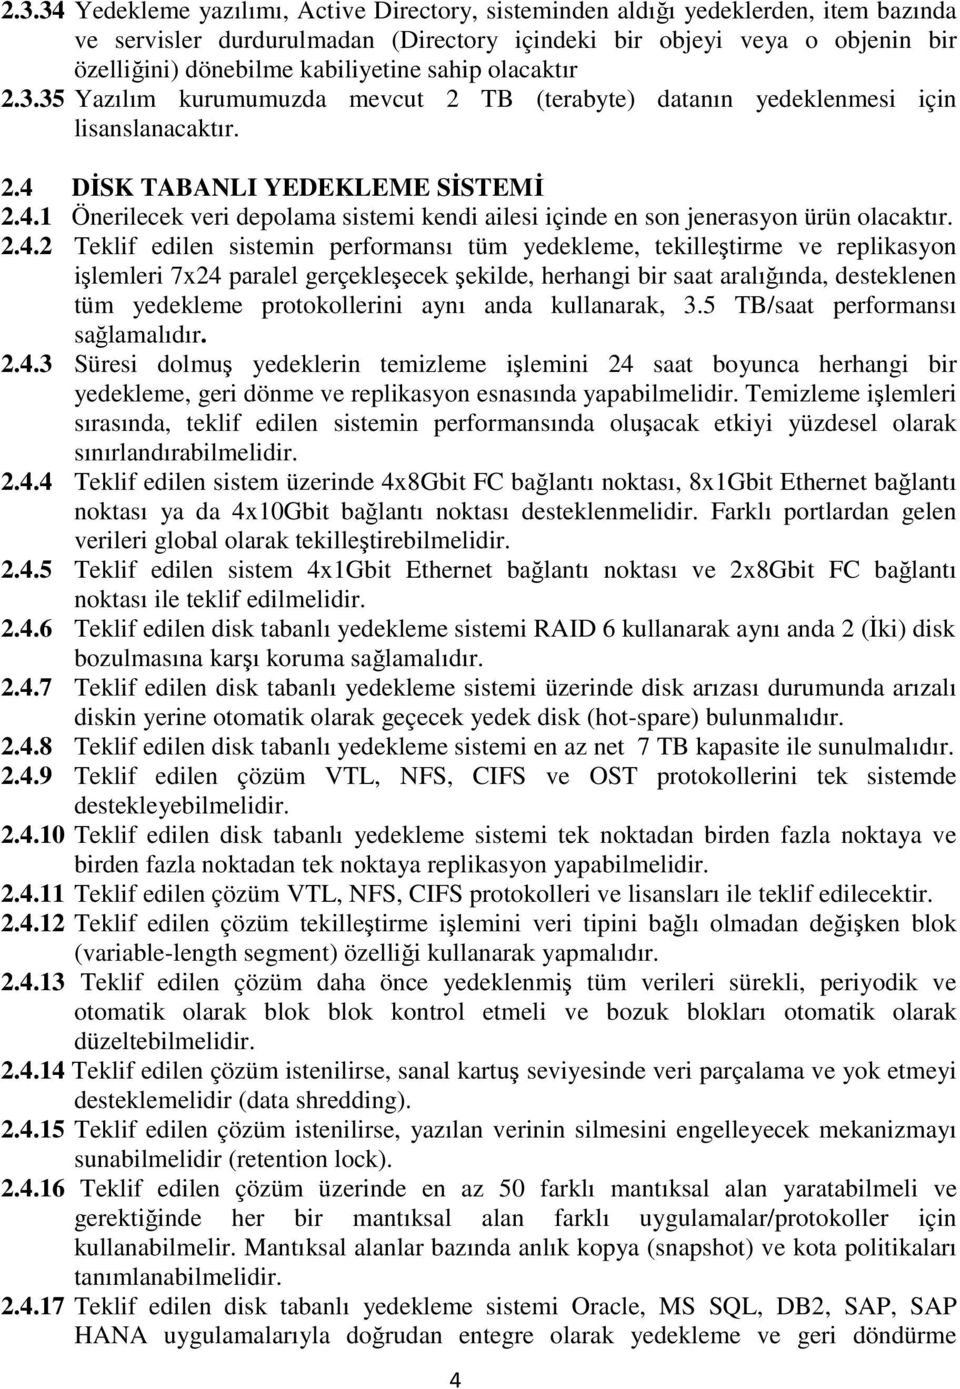 DİSK TABANLI YEDEKLEME SİSTEMİ 2.4.